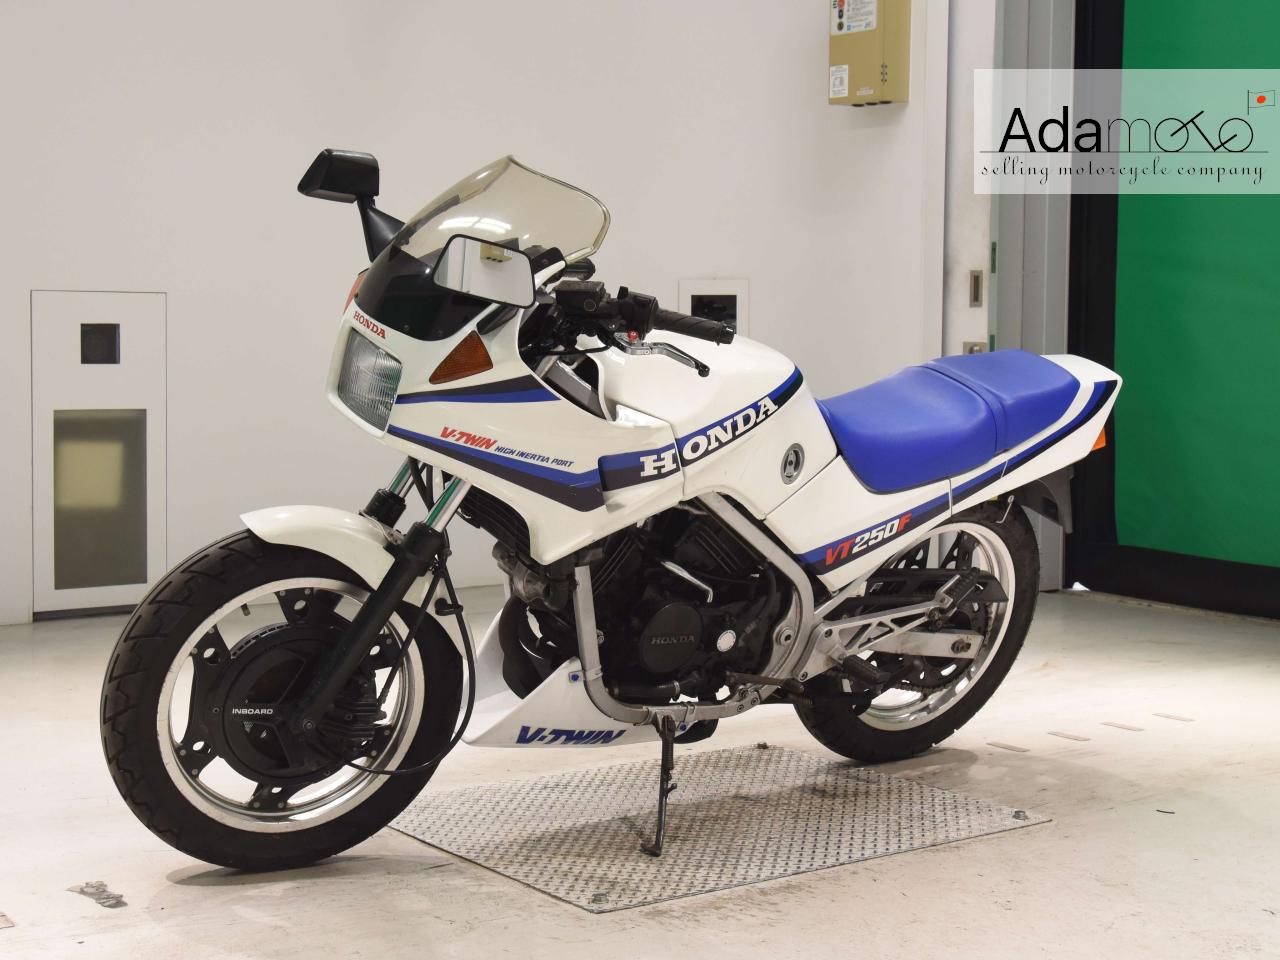 Honda VT250FE - Adamoto - Motorcycles from Japan